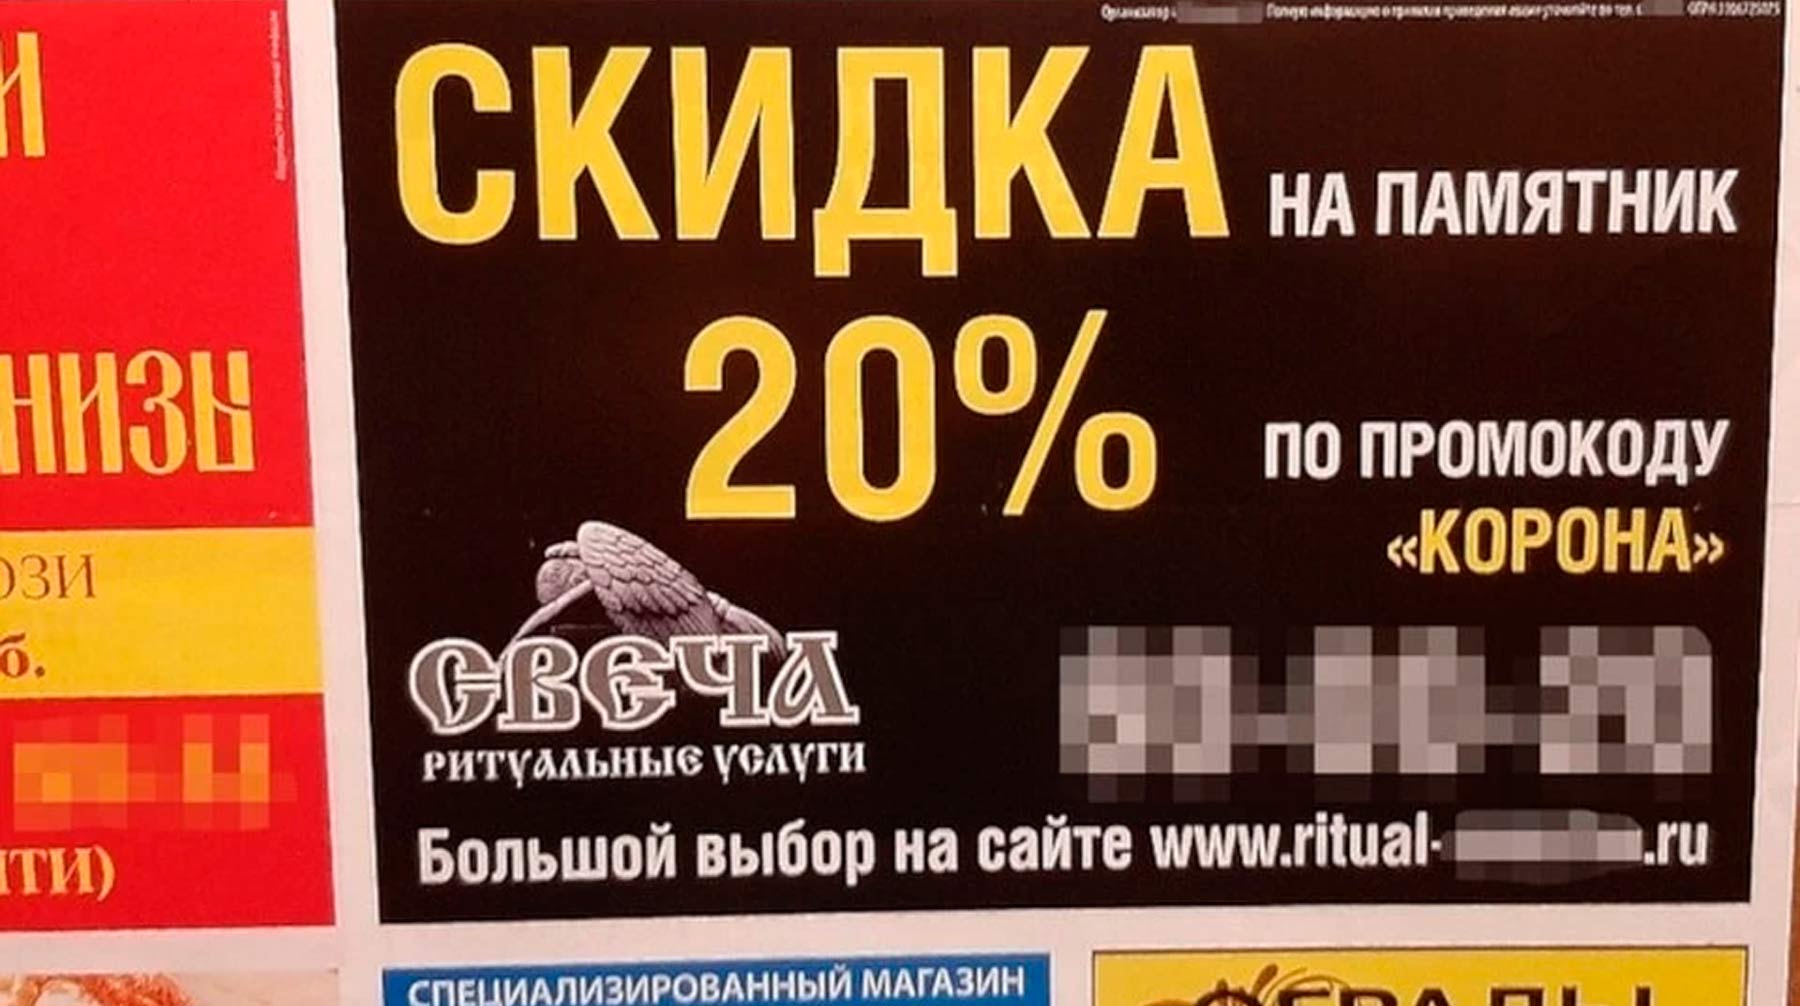 Владелец компании «Свеча» в Смоленске заявил, что им не хотелось обидеть «впечатлительных людей» этой неудачной рекламной акцией Фото: © соцсети